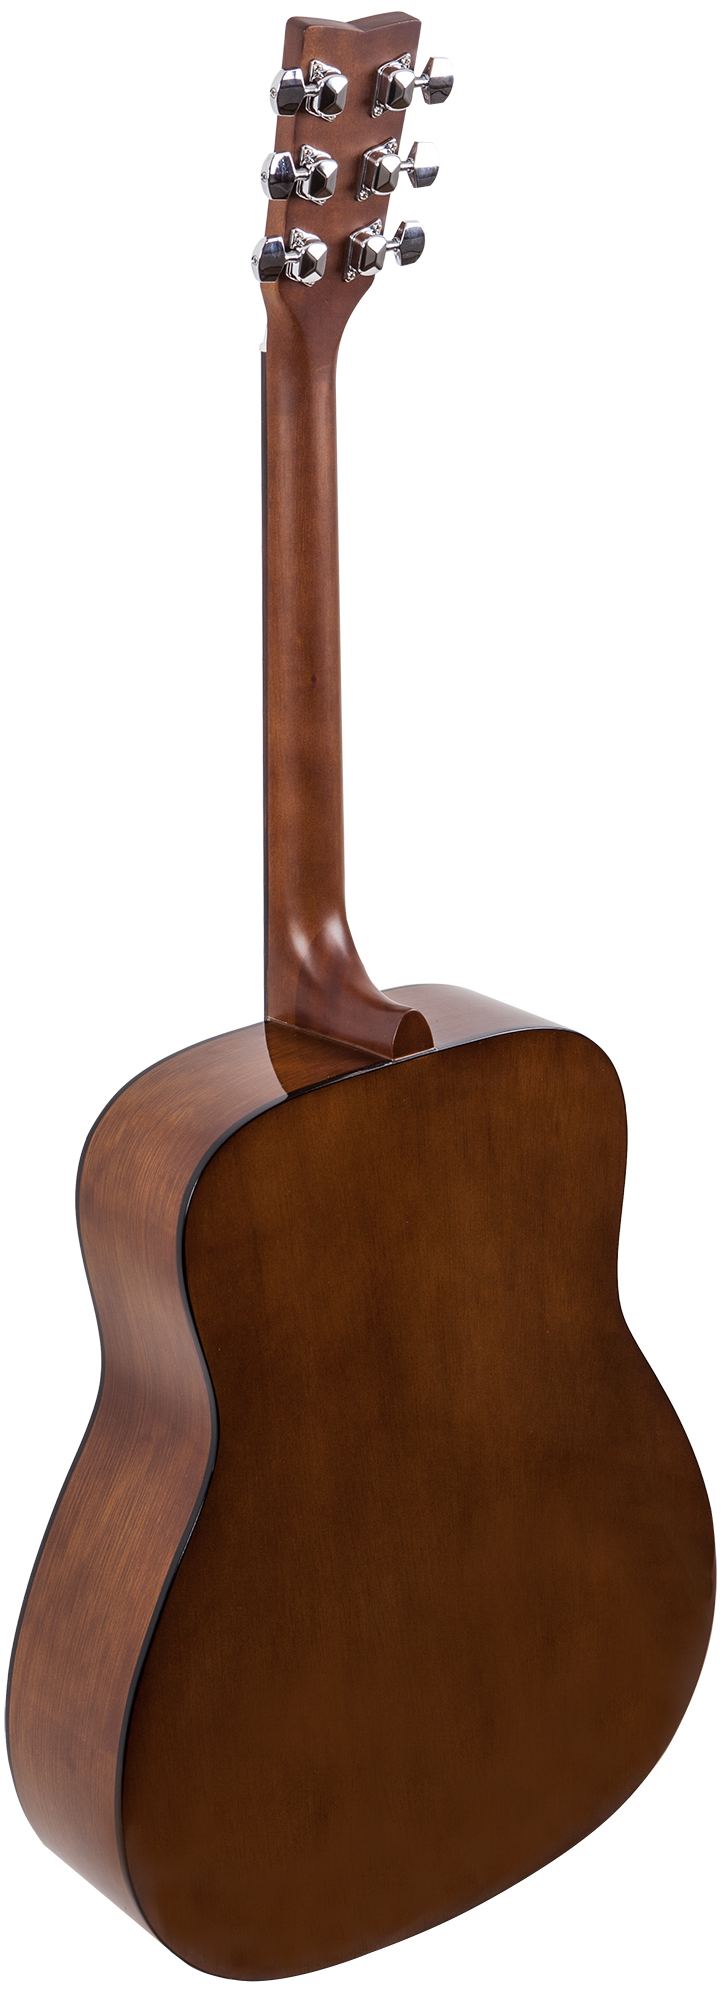 Акустическая гитара Yamaha F310 вид сбоку